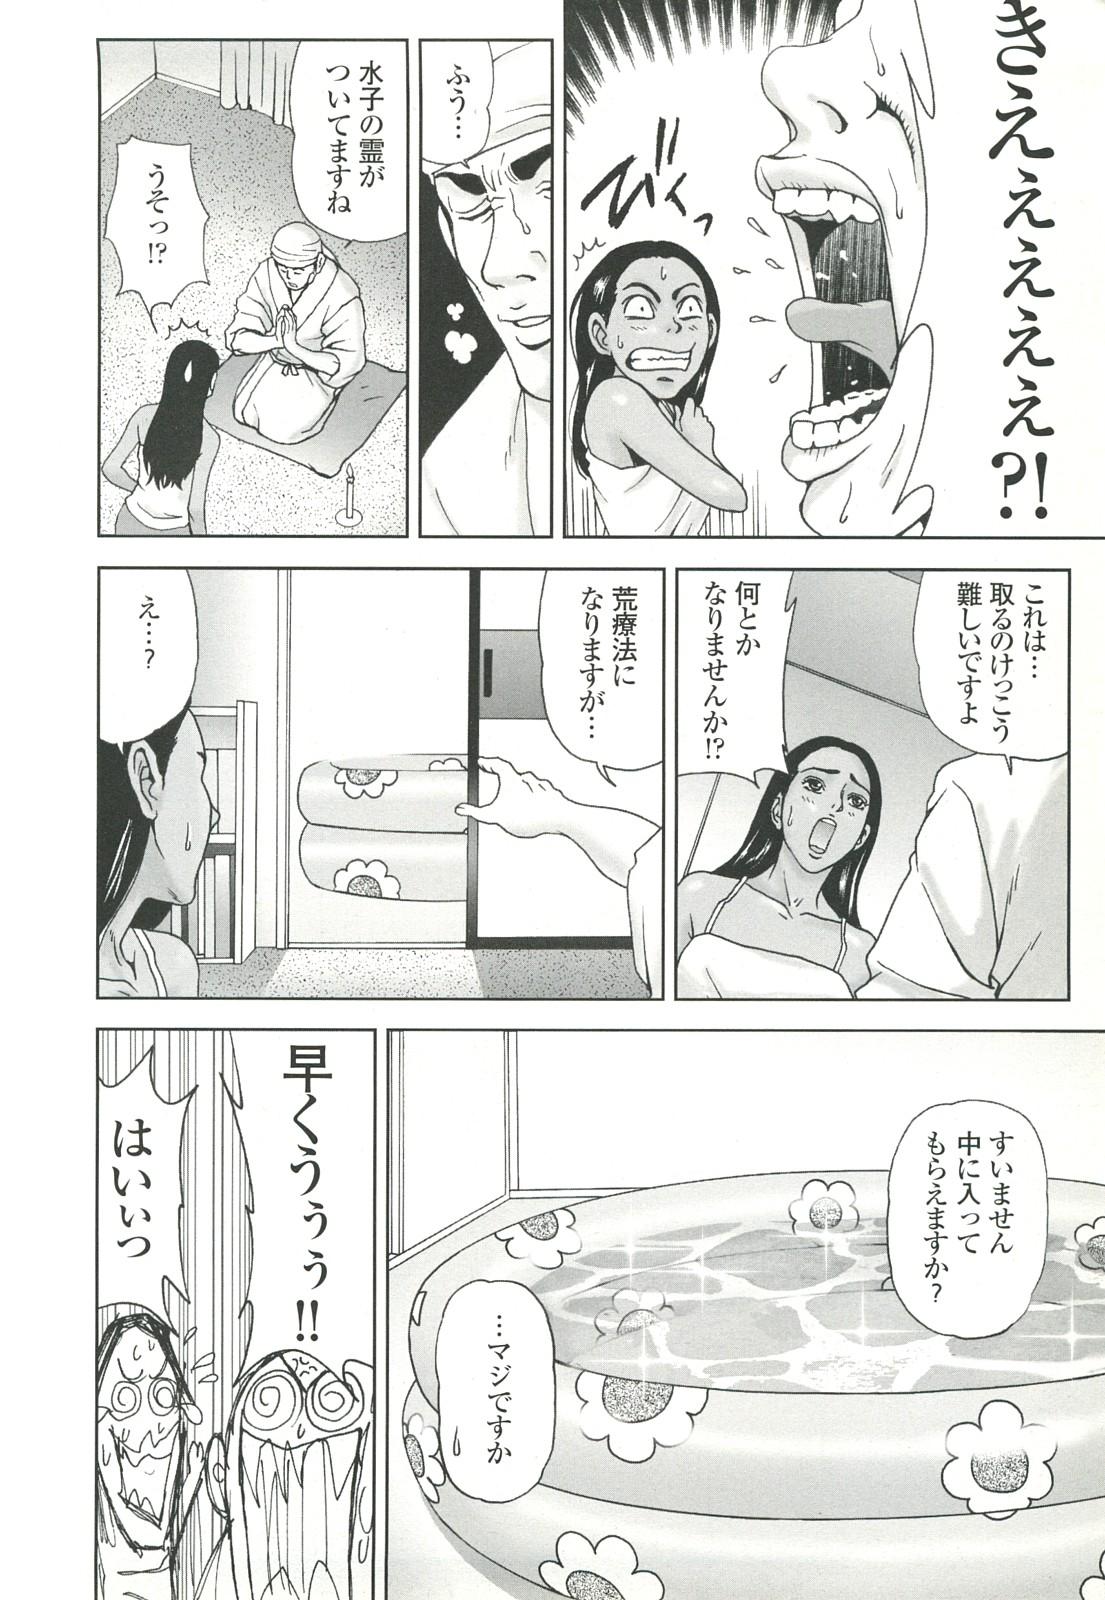 コミック裏モノJAPAN Vol.18 今井のりたつスペシャル号 51